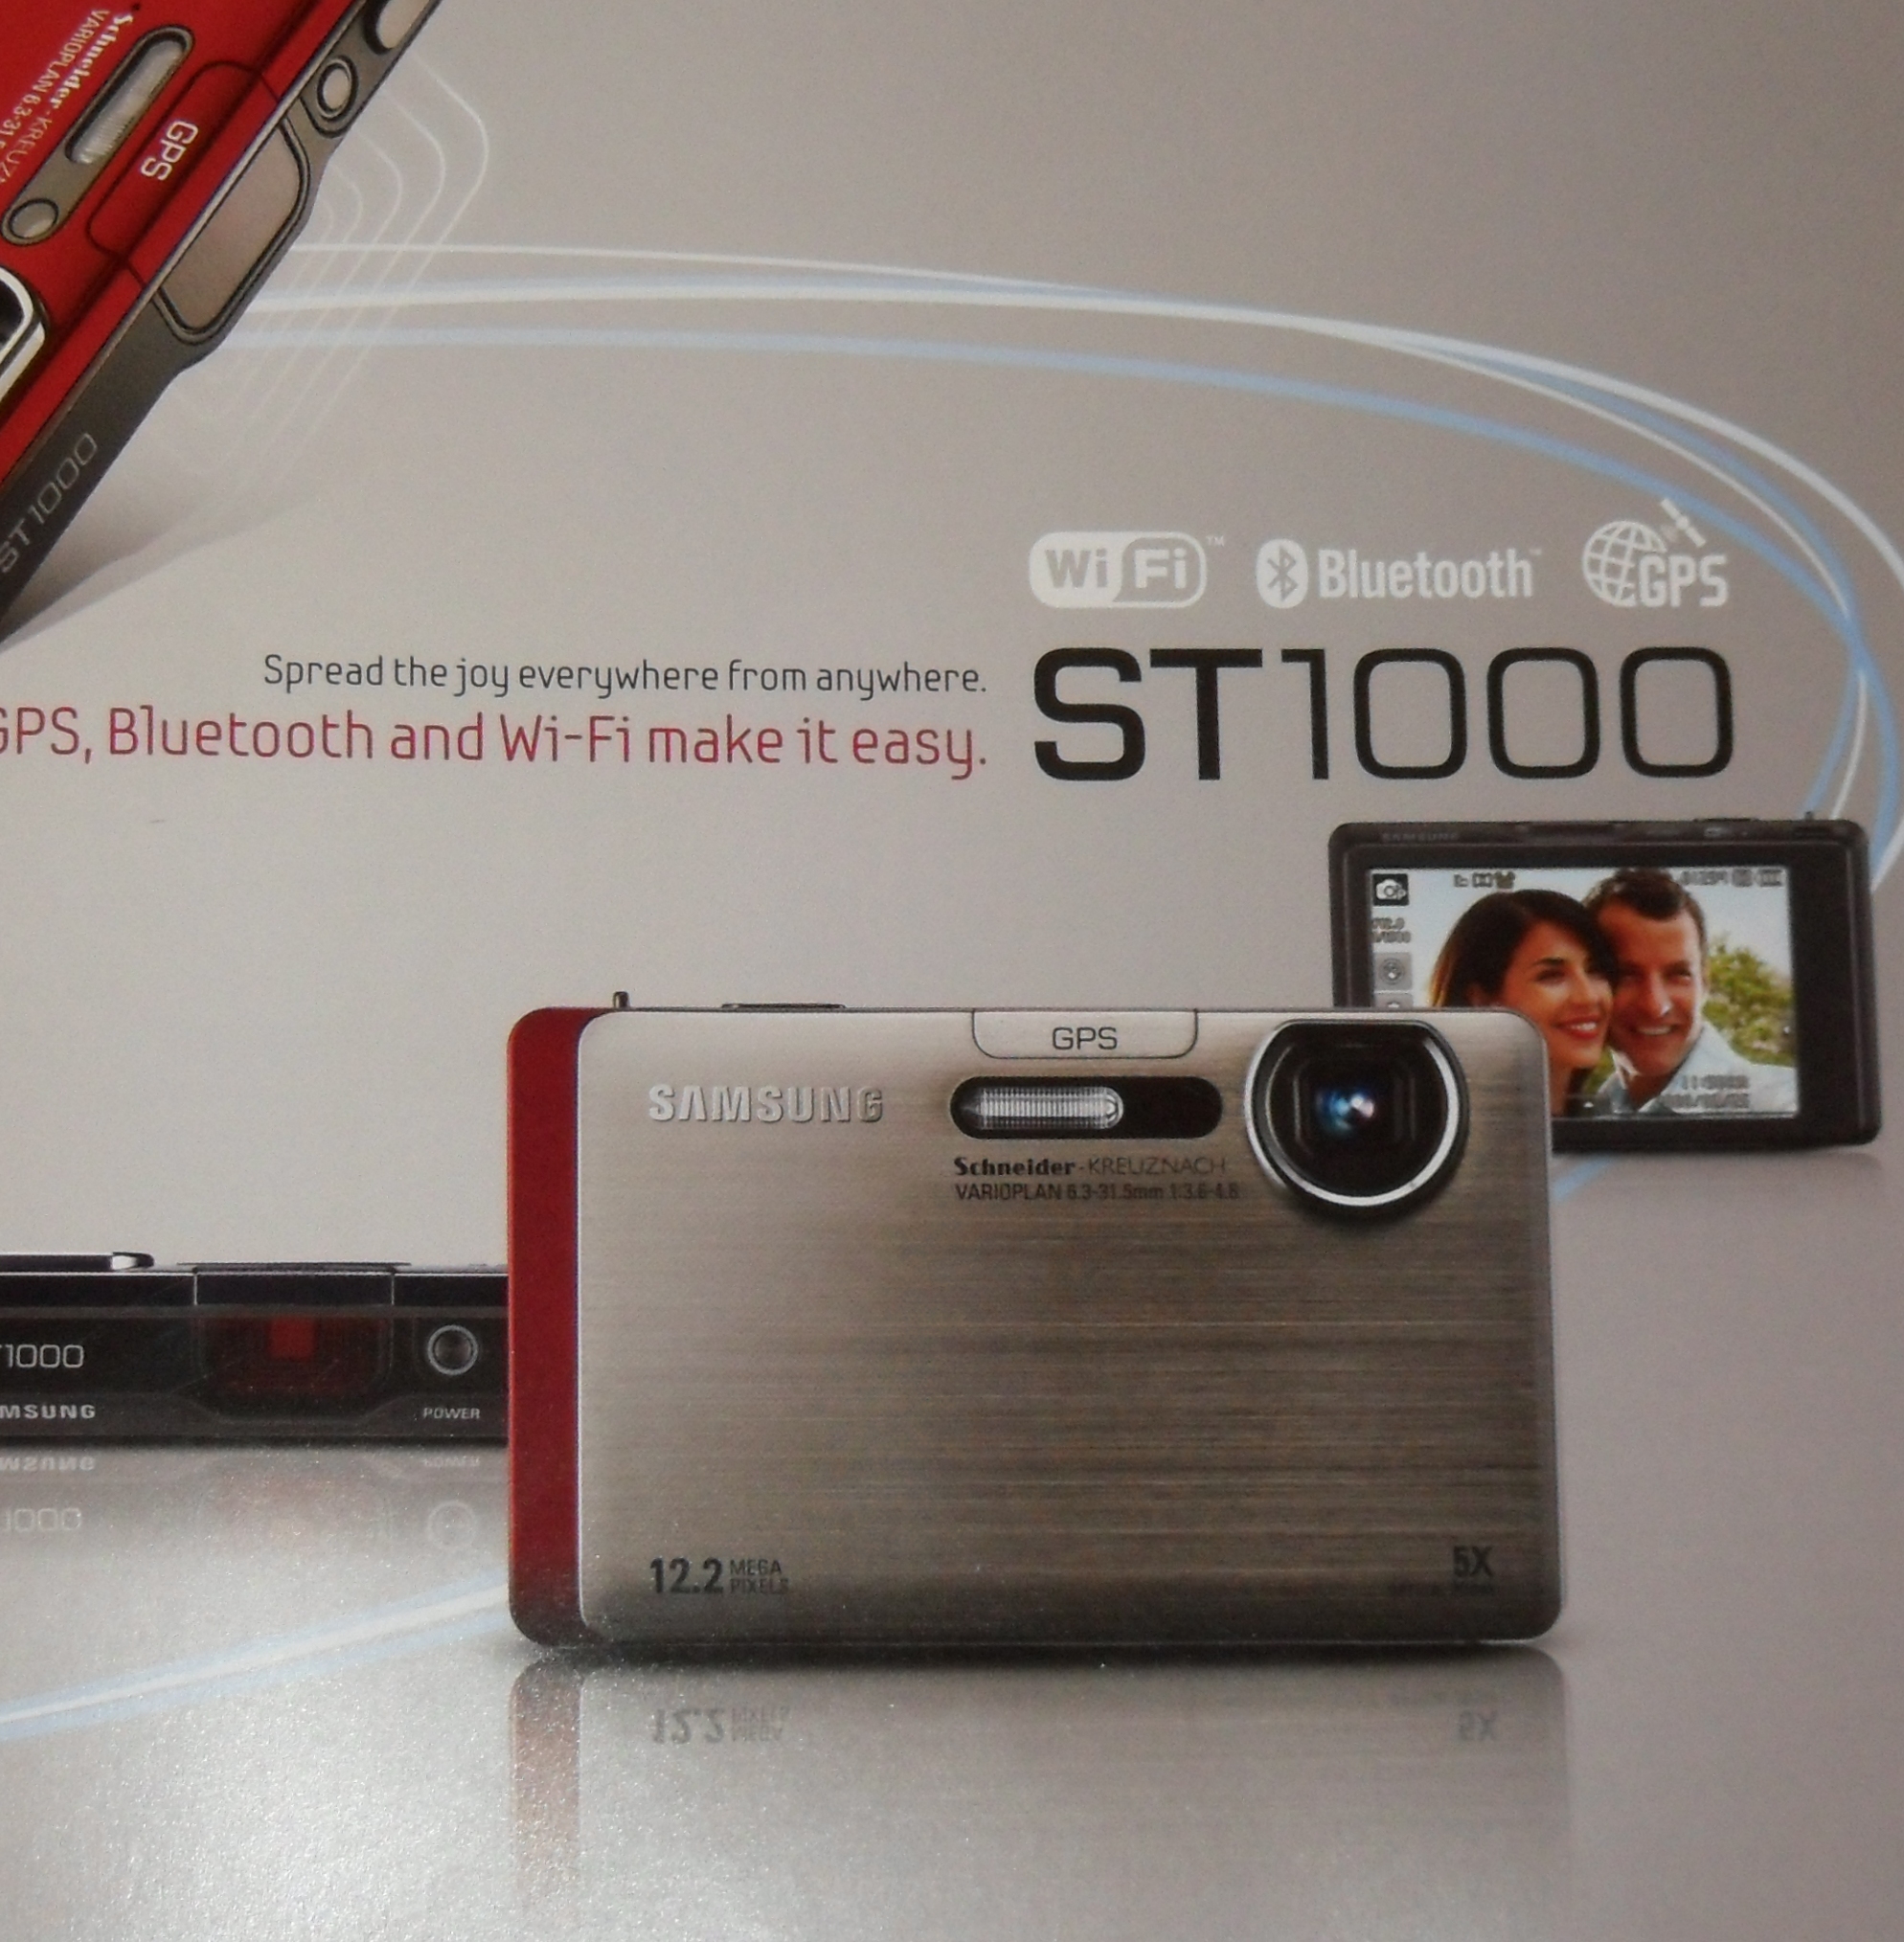 ST 1000 е единственият фотоапарат с GPS, който директно отпечатва името на града, където е направена снимката